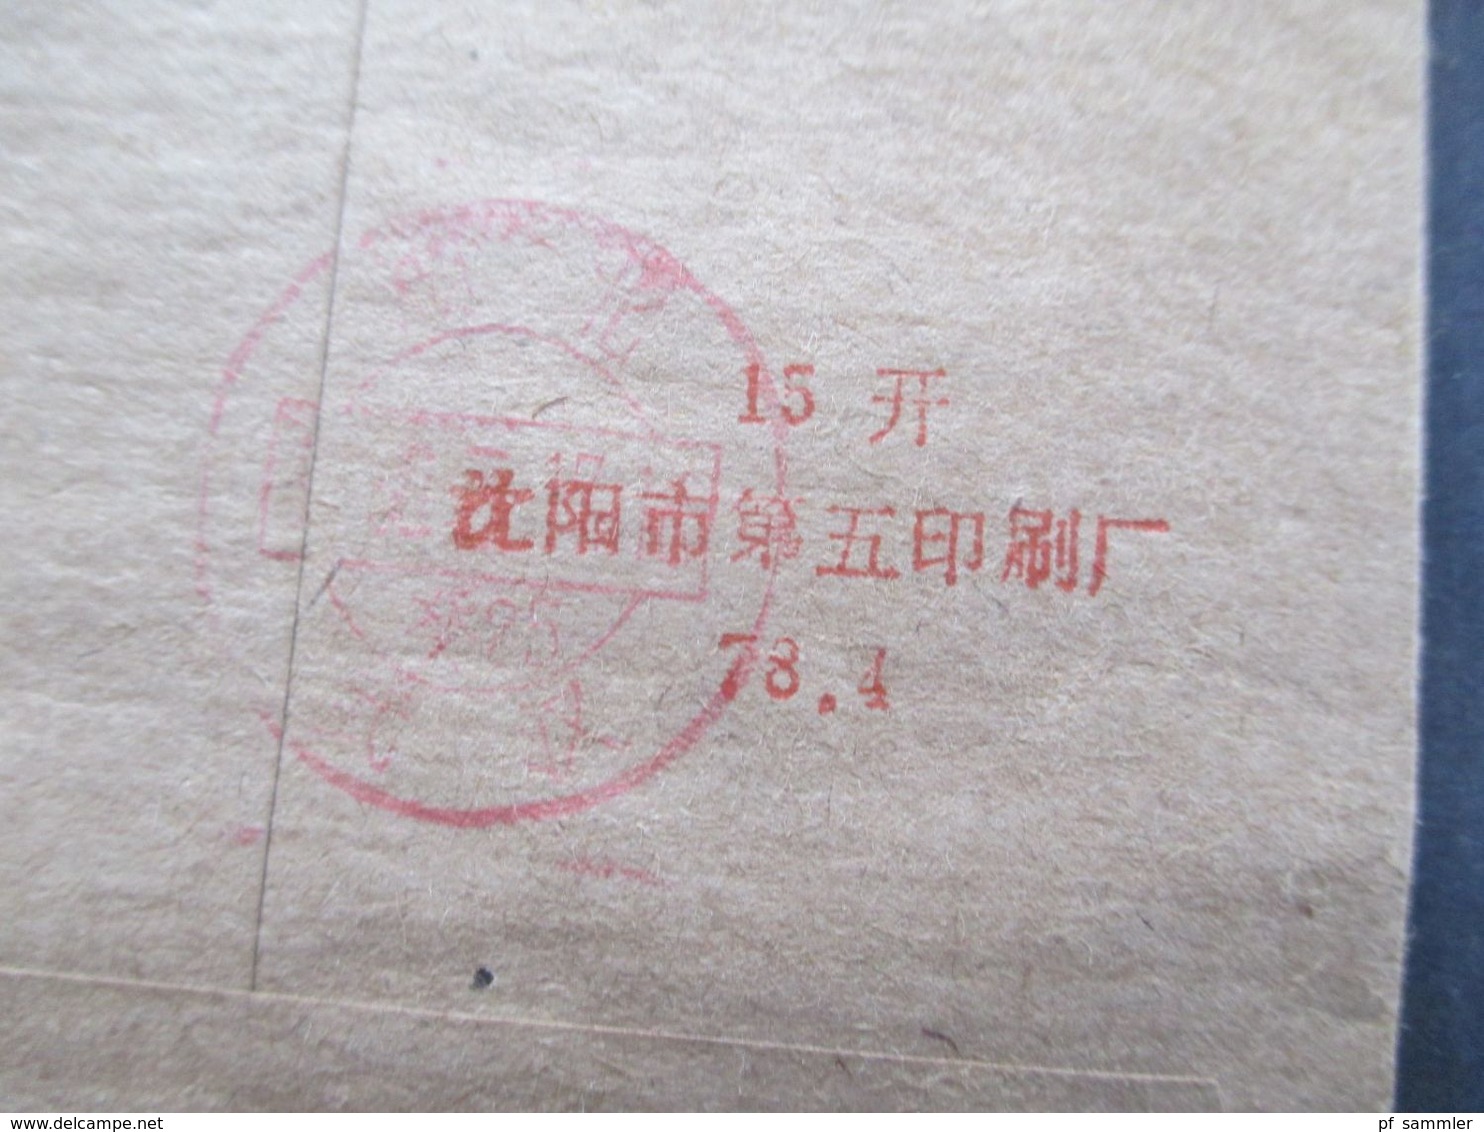 VR China um 1970er Jahre  Belege Posten 50 Stk. Freimarken Bauten Pekings. teilweise mit Inhalt / verschiedene Stempel